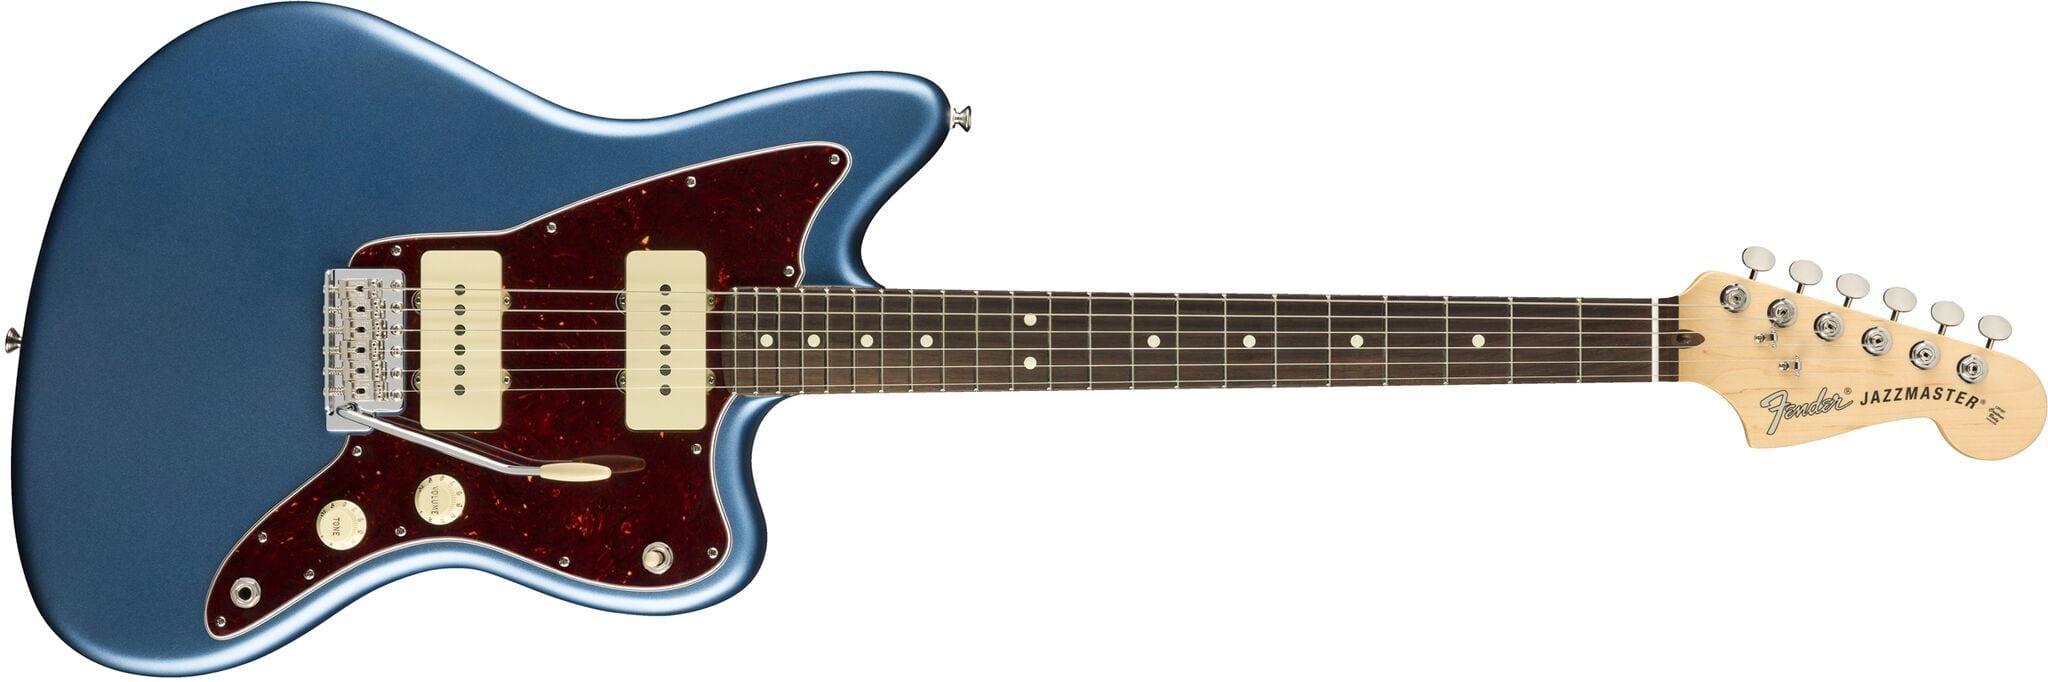 Fender American Performer Series Jazzmaster